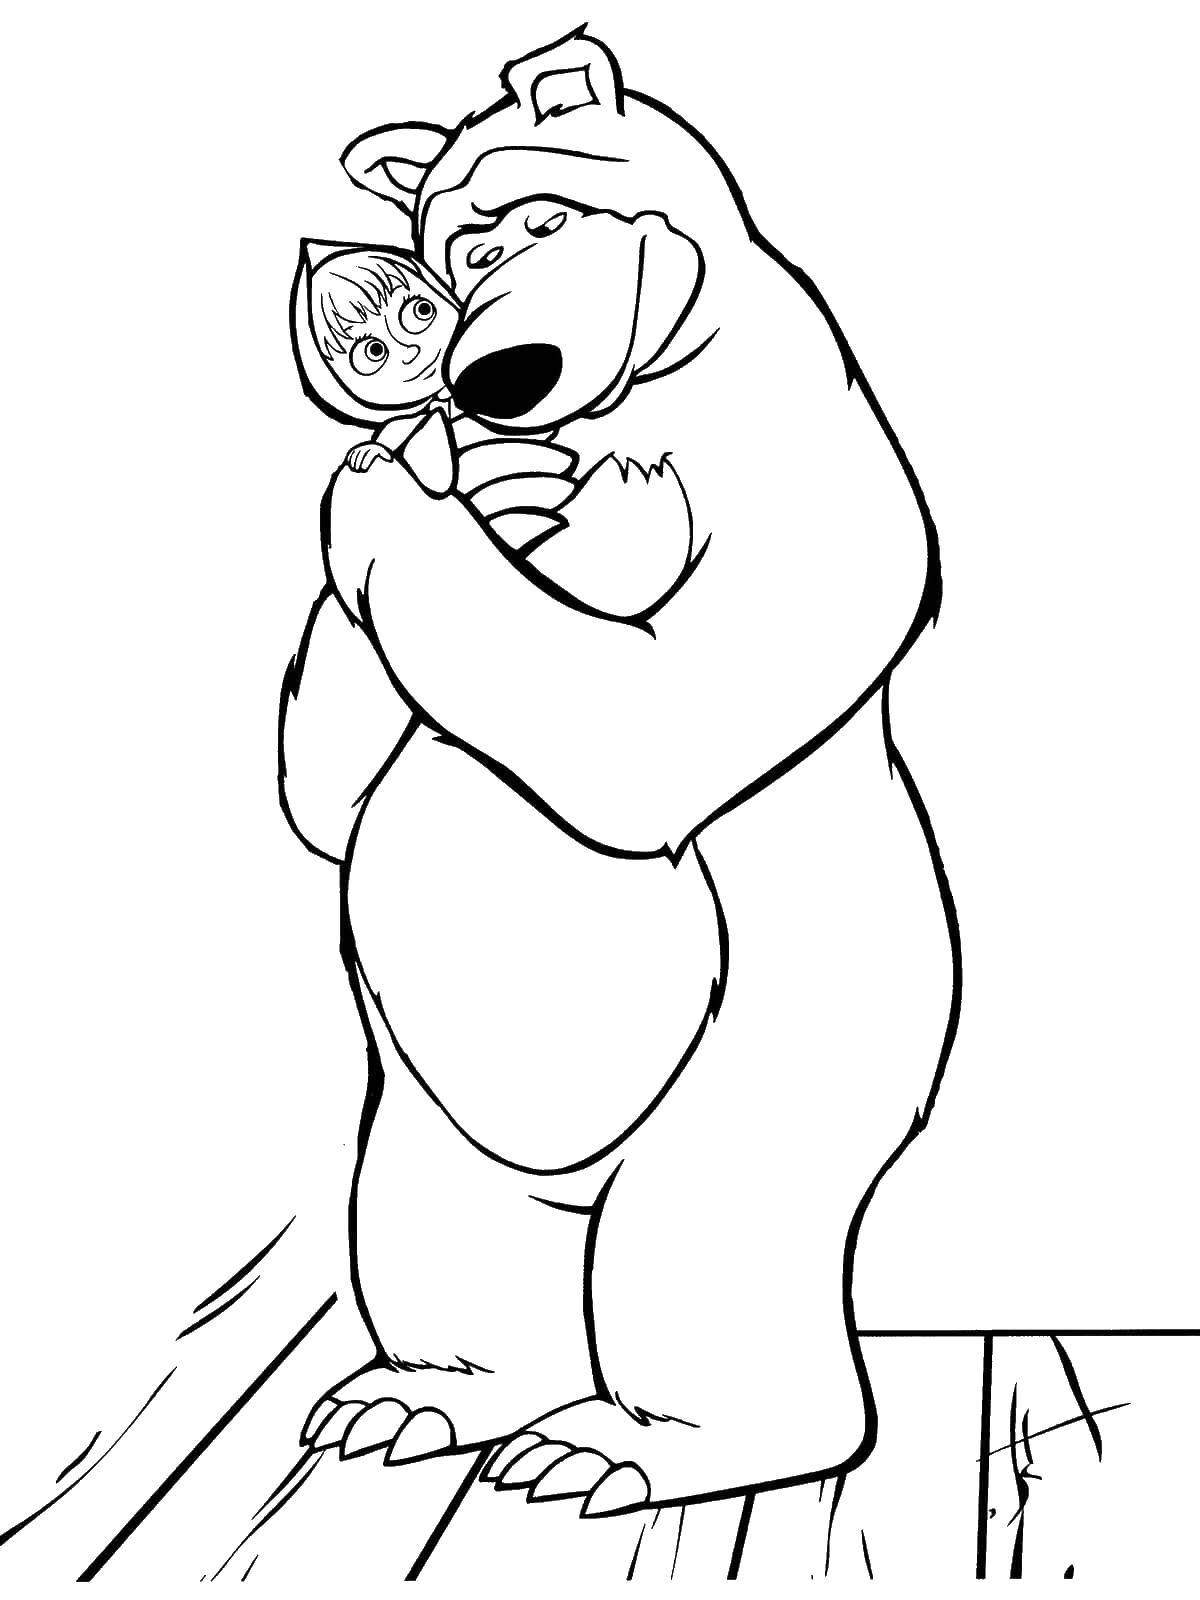 Раскраски для детей про озорную Машу из мультфильма Маша и медведь  Миша обнимает машу